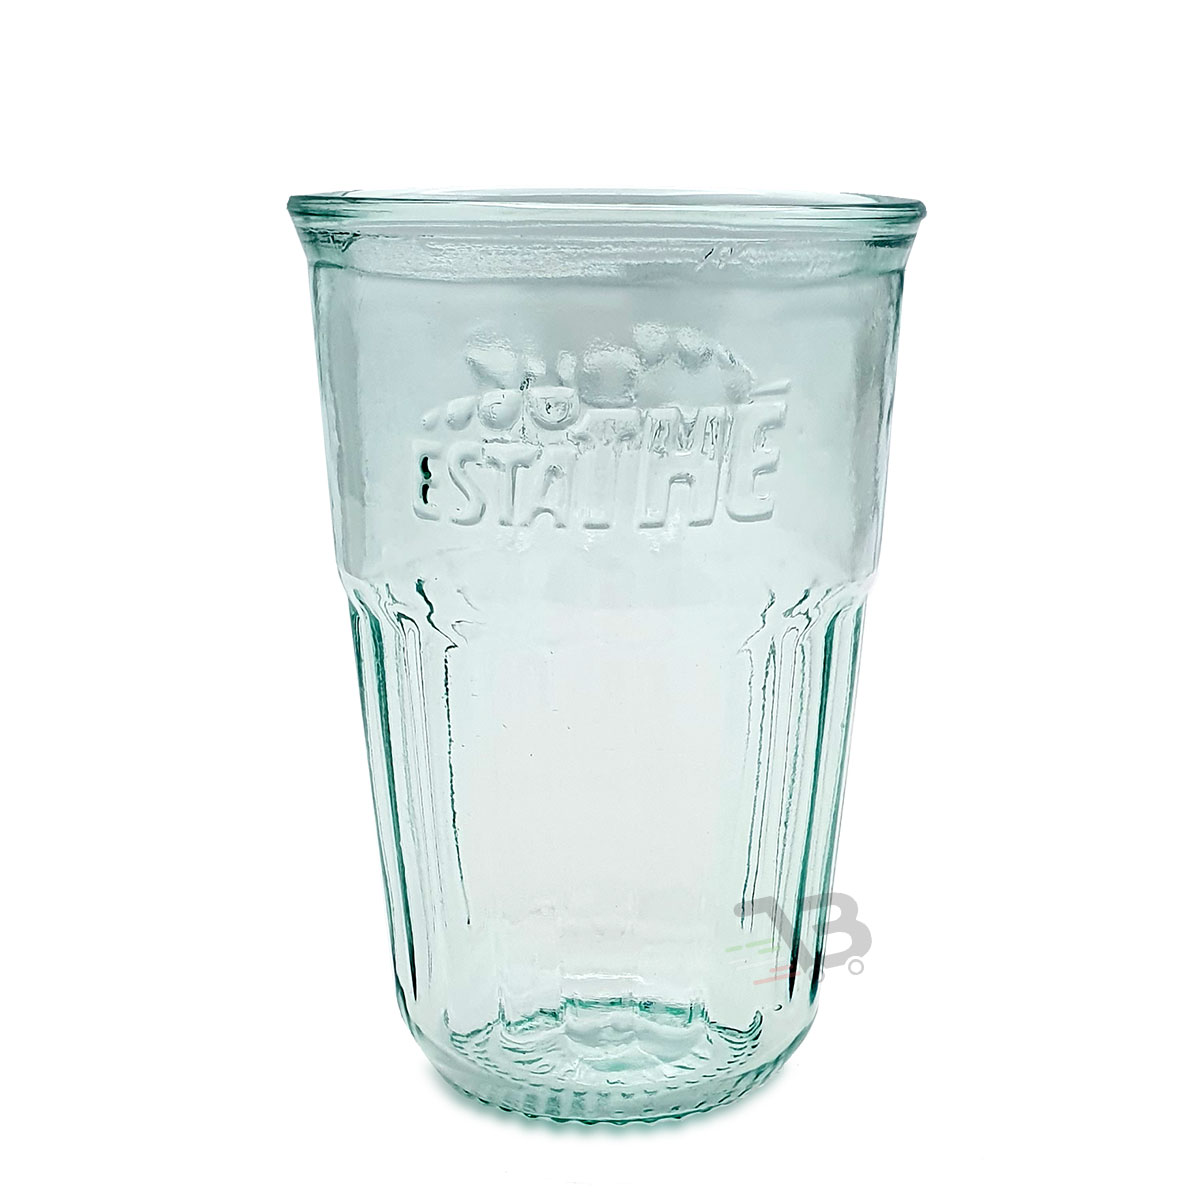 Bicchieri Estathè 43cl in vetro riciclato x6 pz